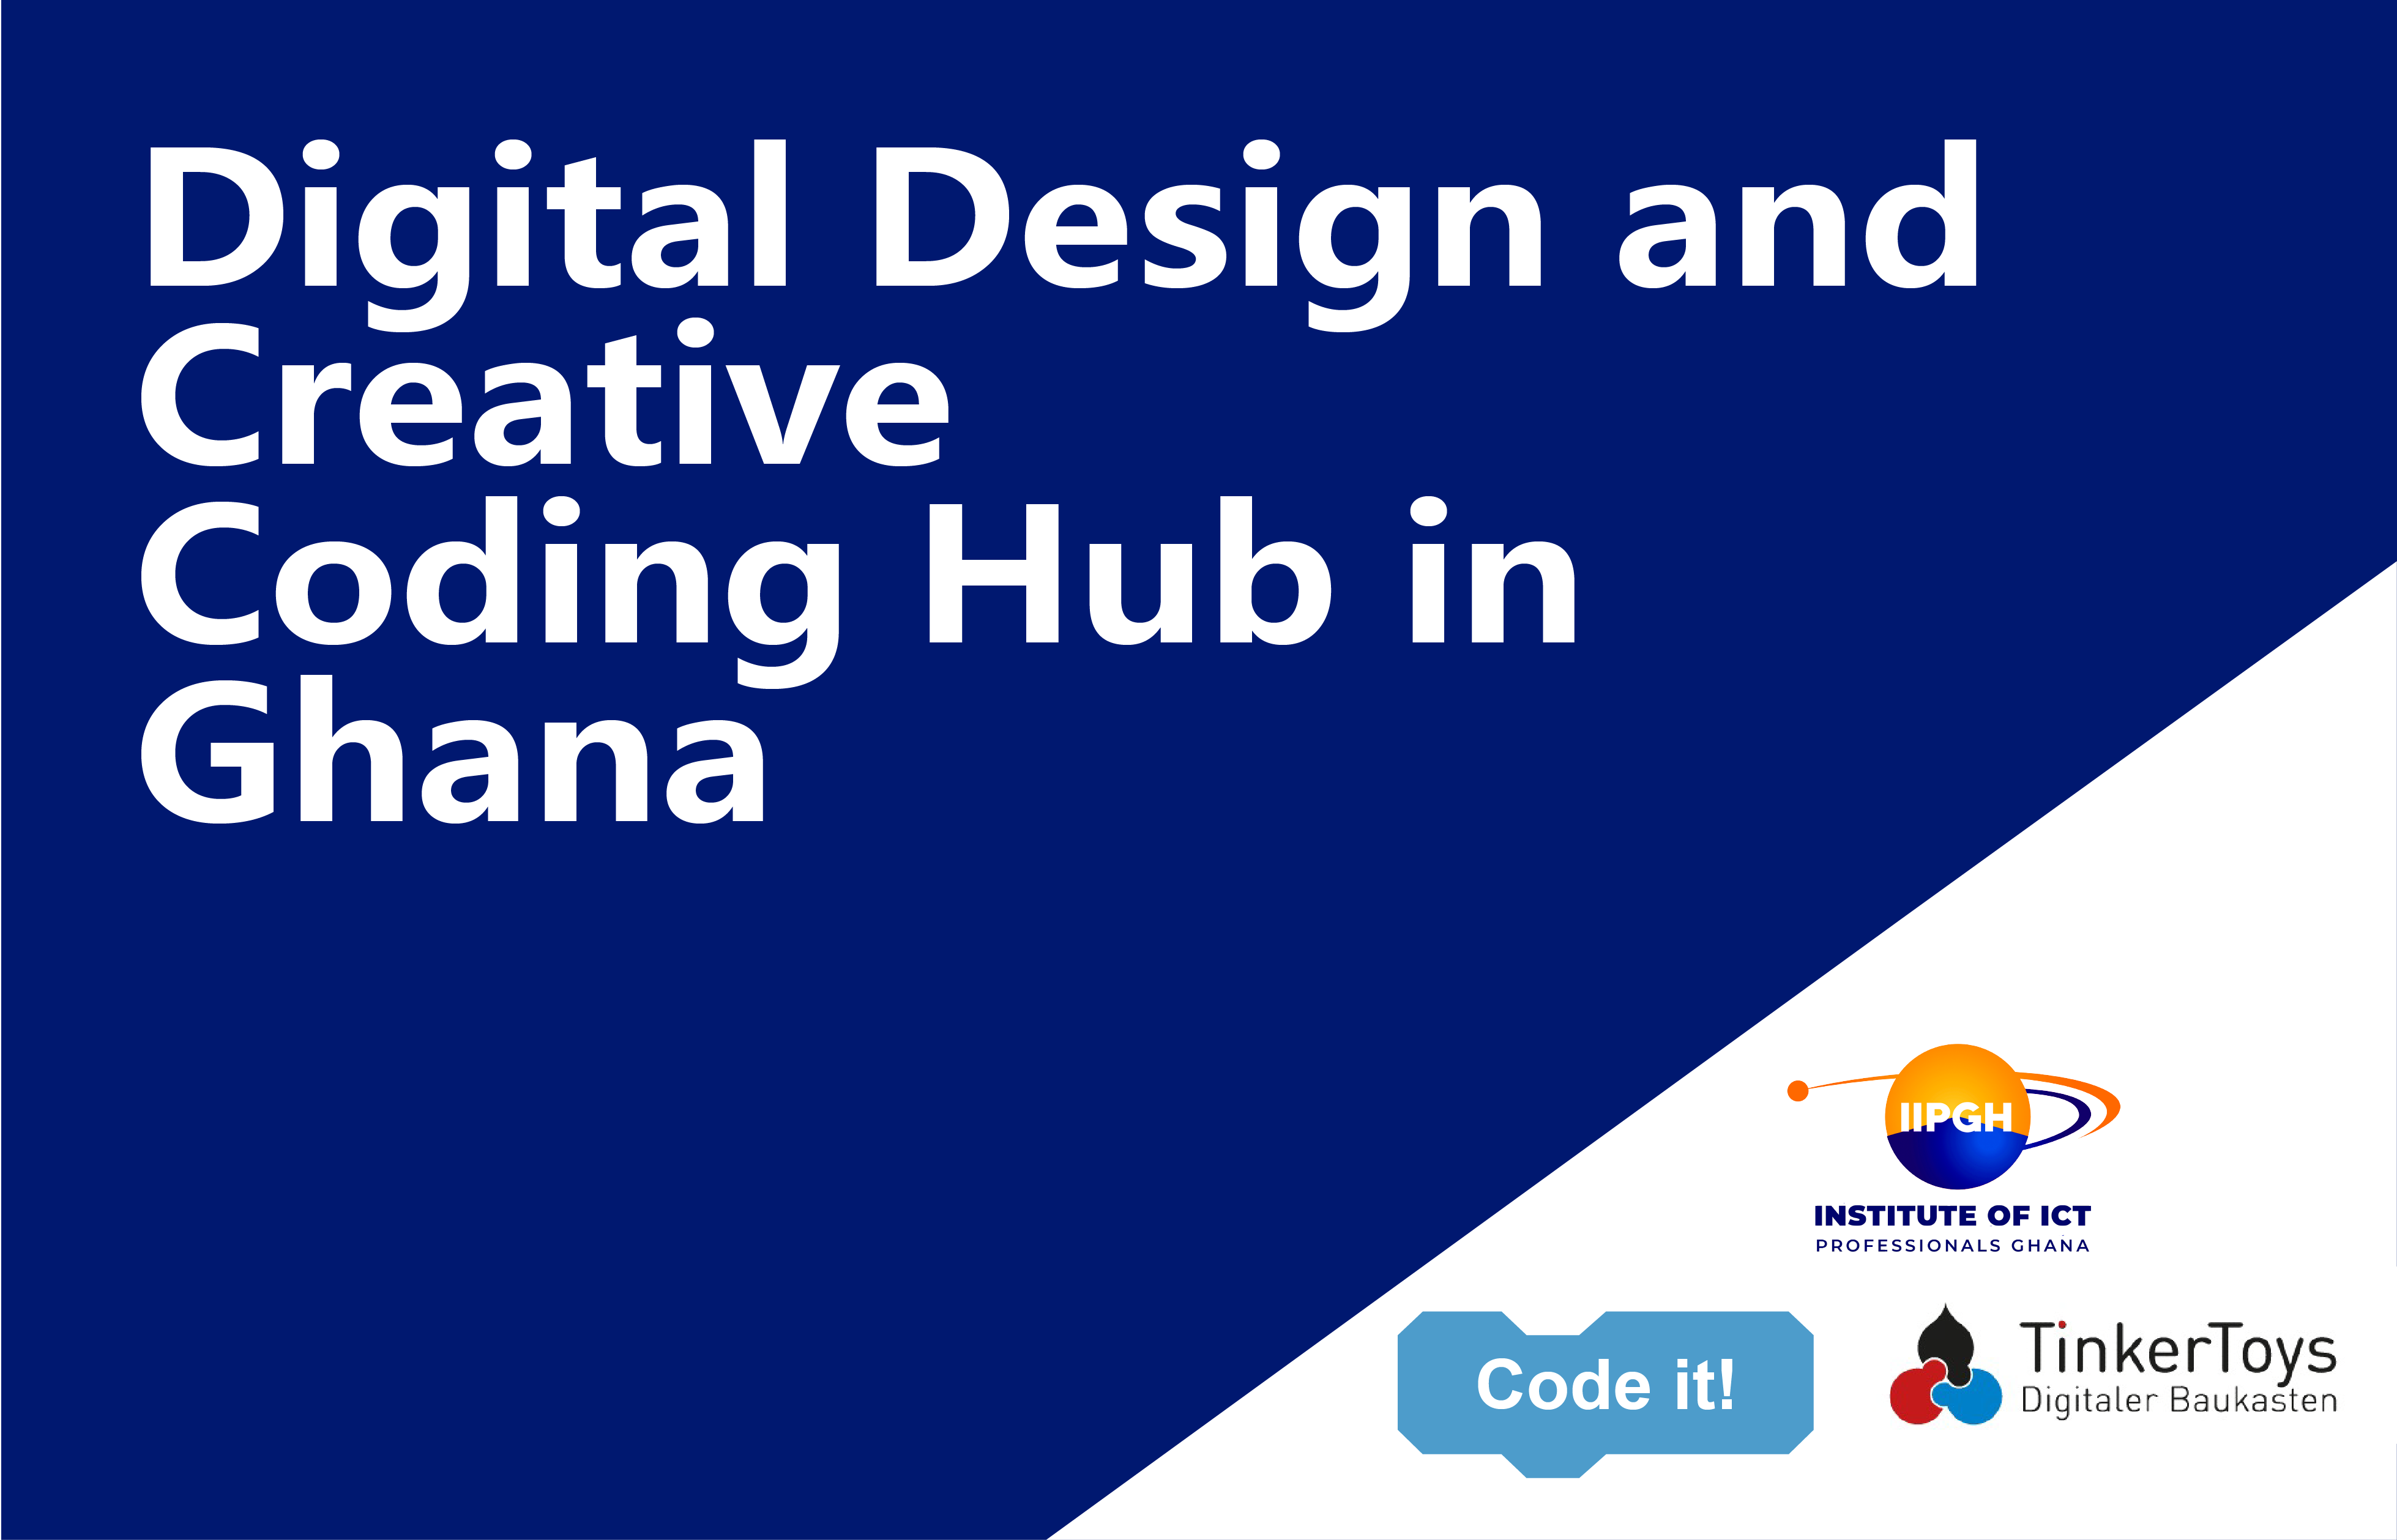 Digital design and creative coding hub in Ghana - 2